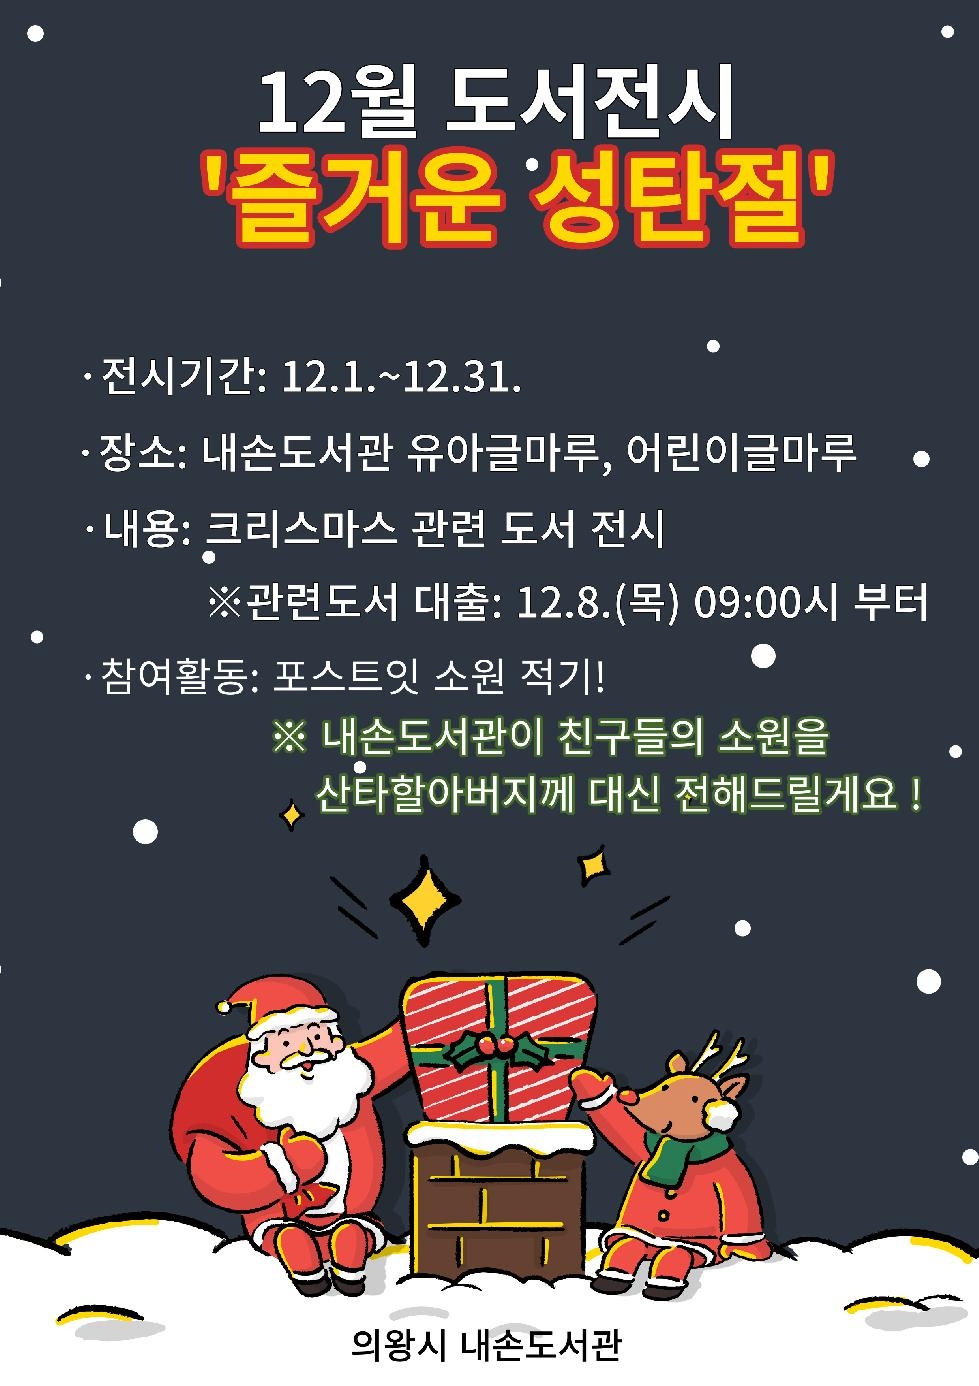 의왕 내손도서관, 크리스마스 도서전시회 개최